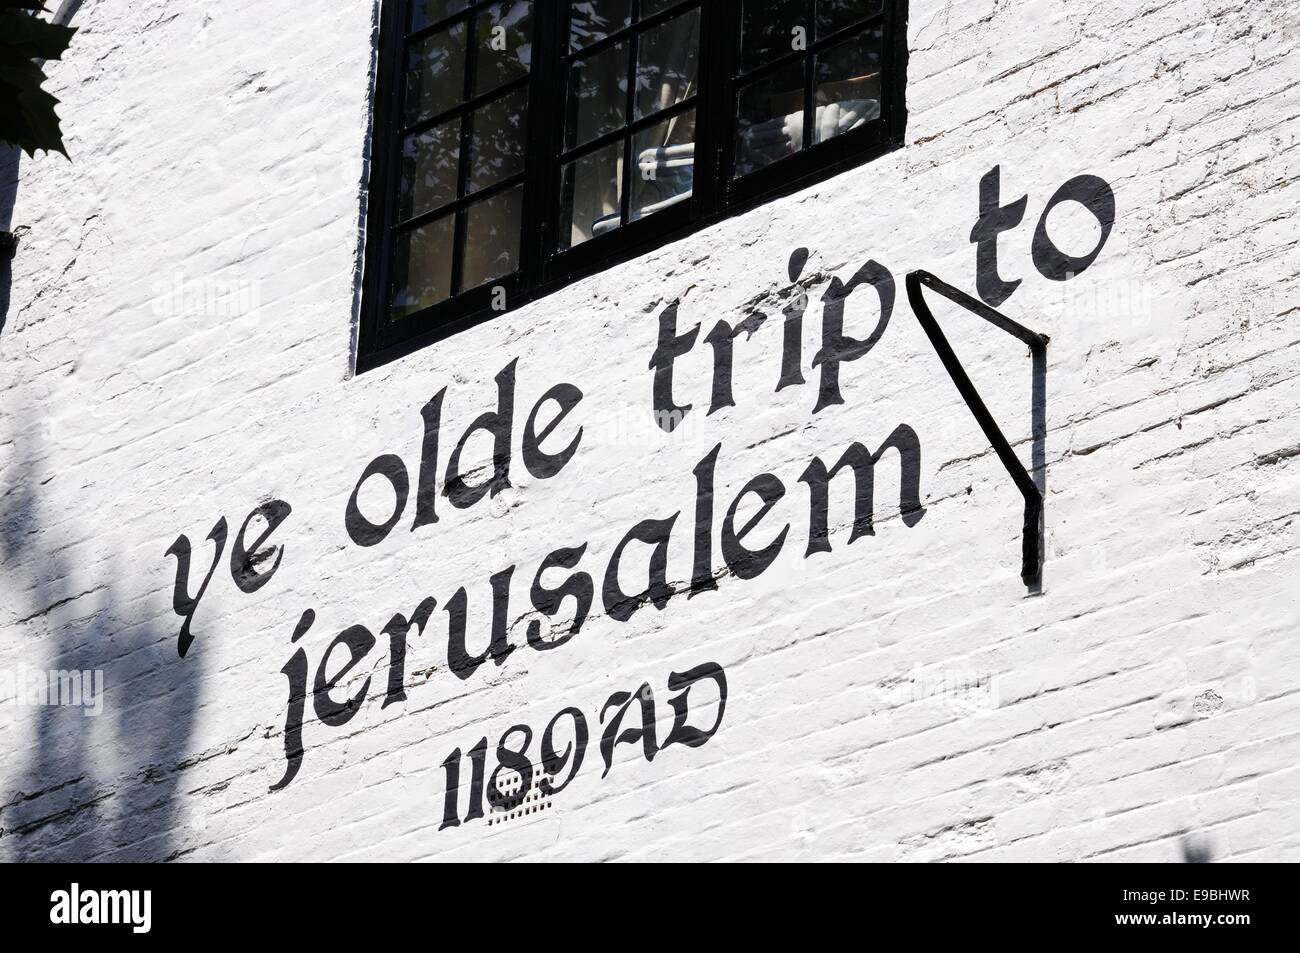 Viaje a Jerusalén Ye Olde Inn situado a los pies de Castle Rock, la reputación de ser el más antiguo establecimiento potable en Inglaterra. Foto de stock